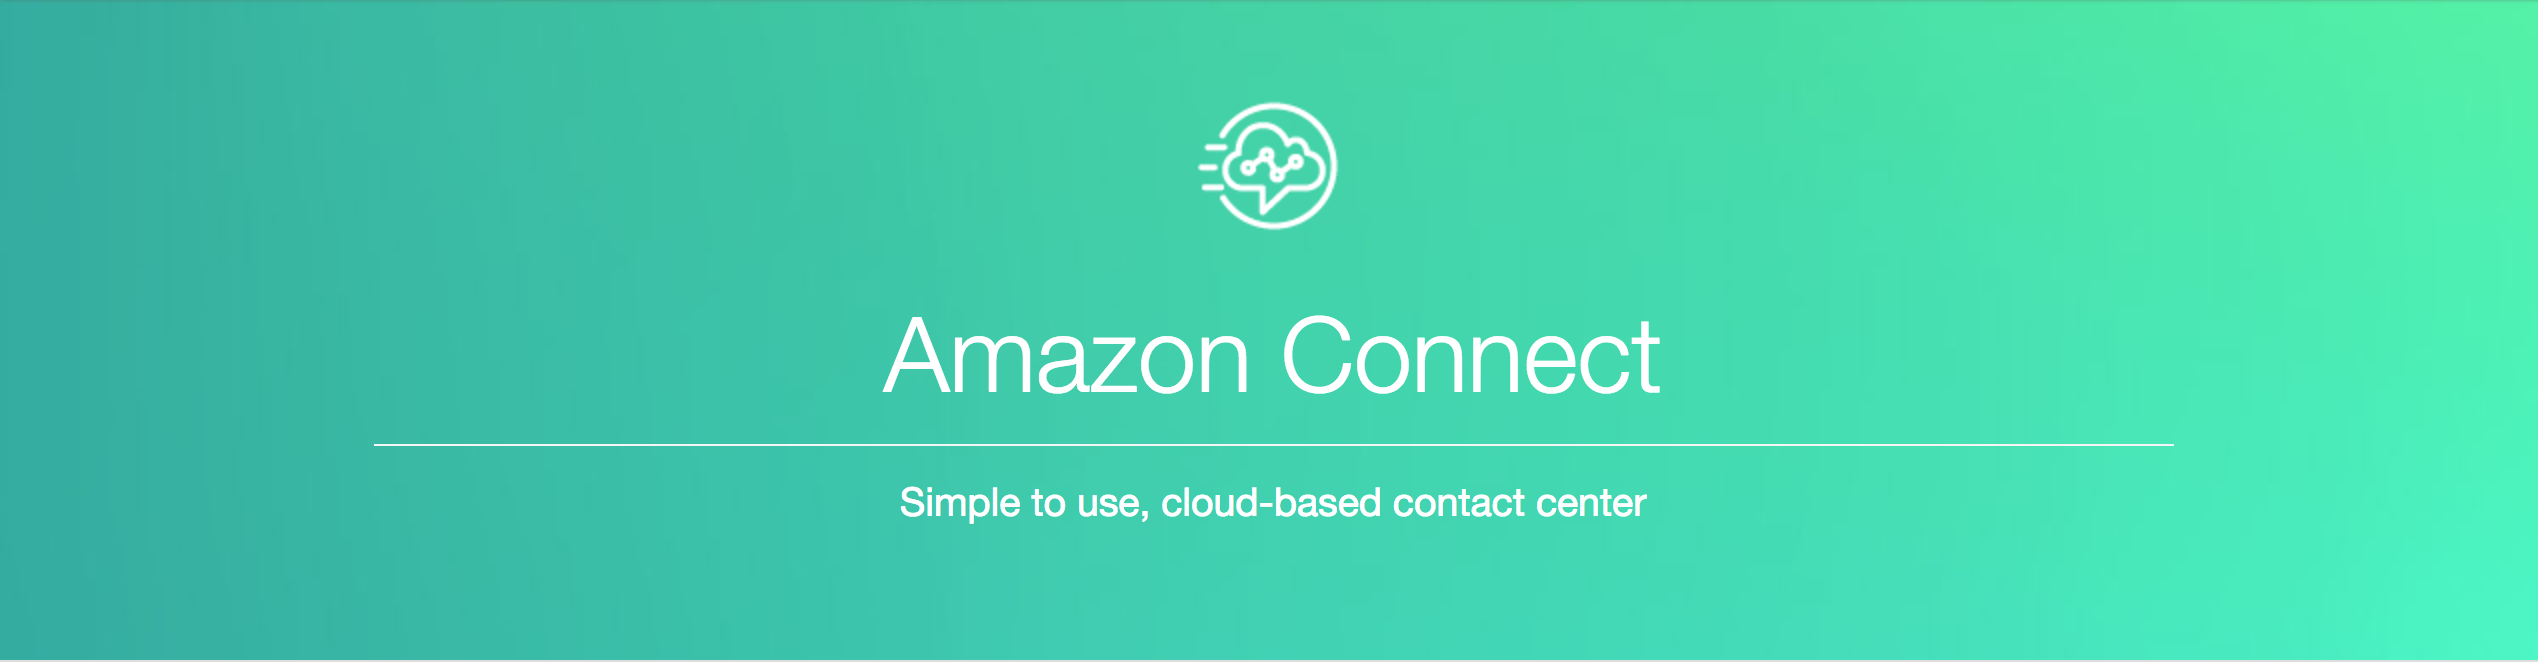 amazon-connect